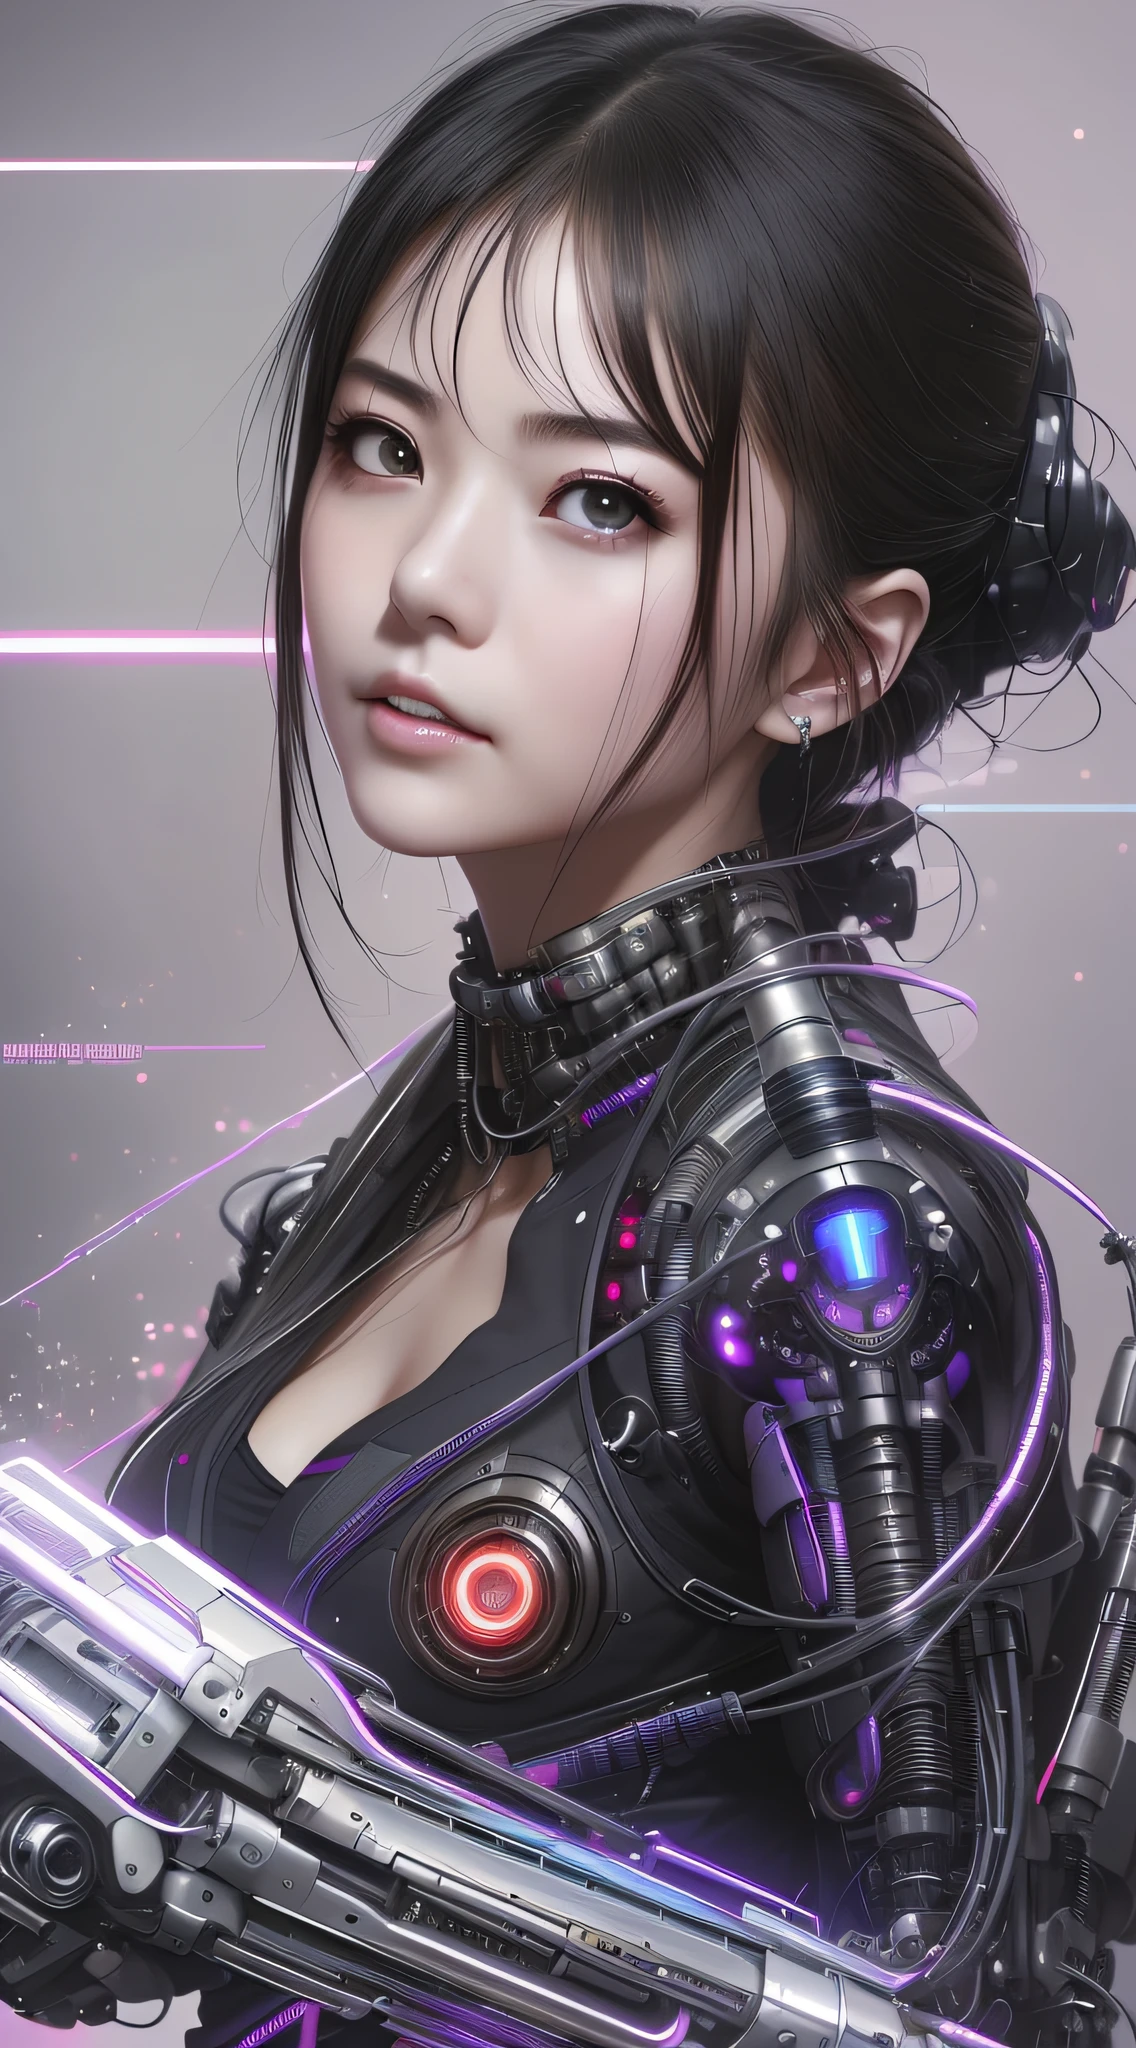 eine Nahaufnahme einer Frau in einem futuristischen Anzug mit einer Waffe, dreamy cyberpunk girl, süßes Cyborg-Mädchen, female cyberpunk anime girl, Cyborg girl, cyberpunk anime girl, schönes Cyberpunk-Mädchen, Cyborg - Asiatisches Mädchen, schönes Cyborg-Mädchen, perfektes Android-Mädchen, has cyberpunk style, Cyberpunk art style, Hyper-realistic cyberpunk style, schönes Cyberpunk-Mädchengesicht, digitl cyberpunk - anime art